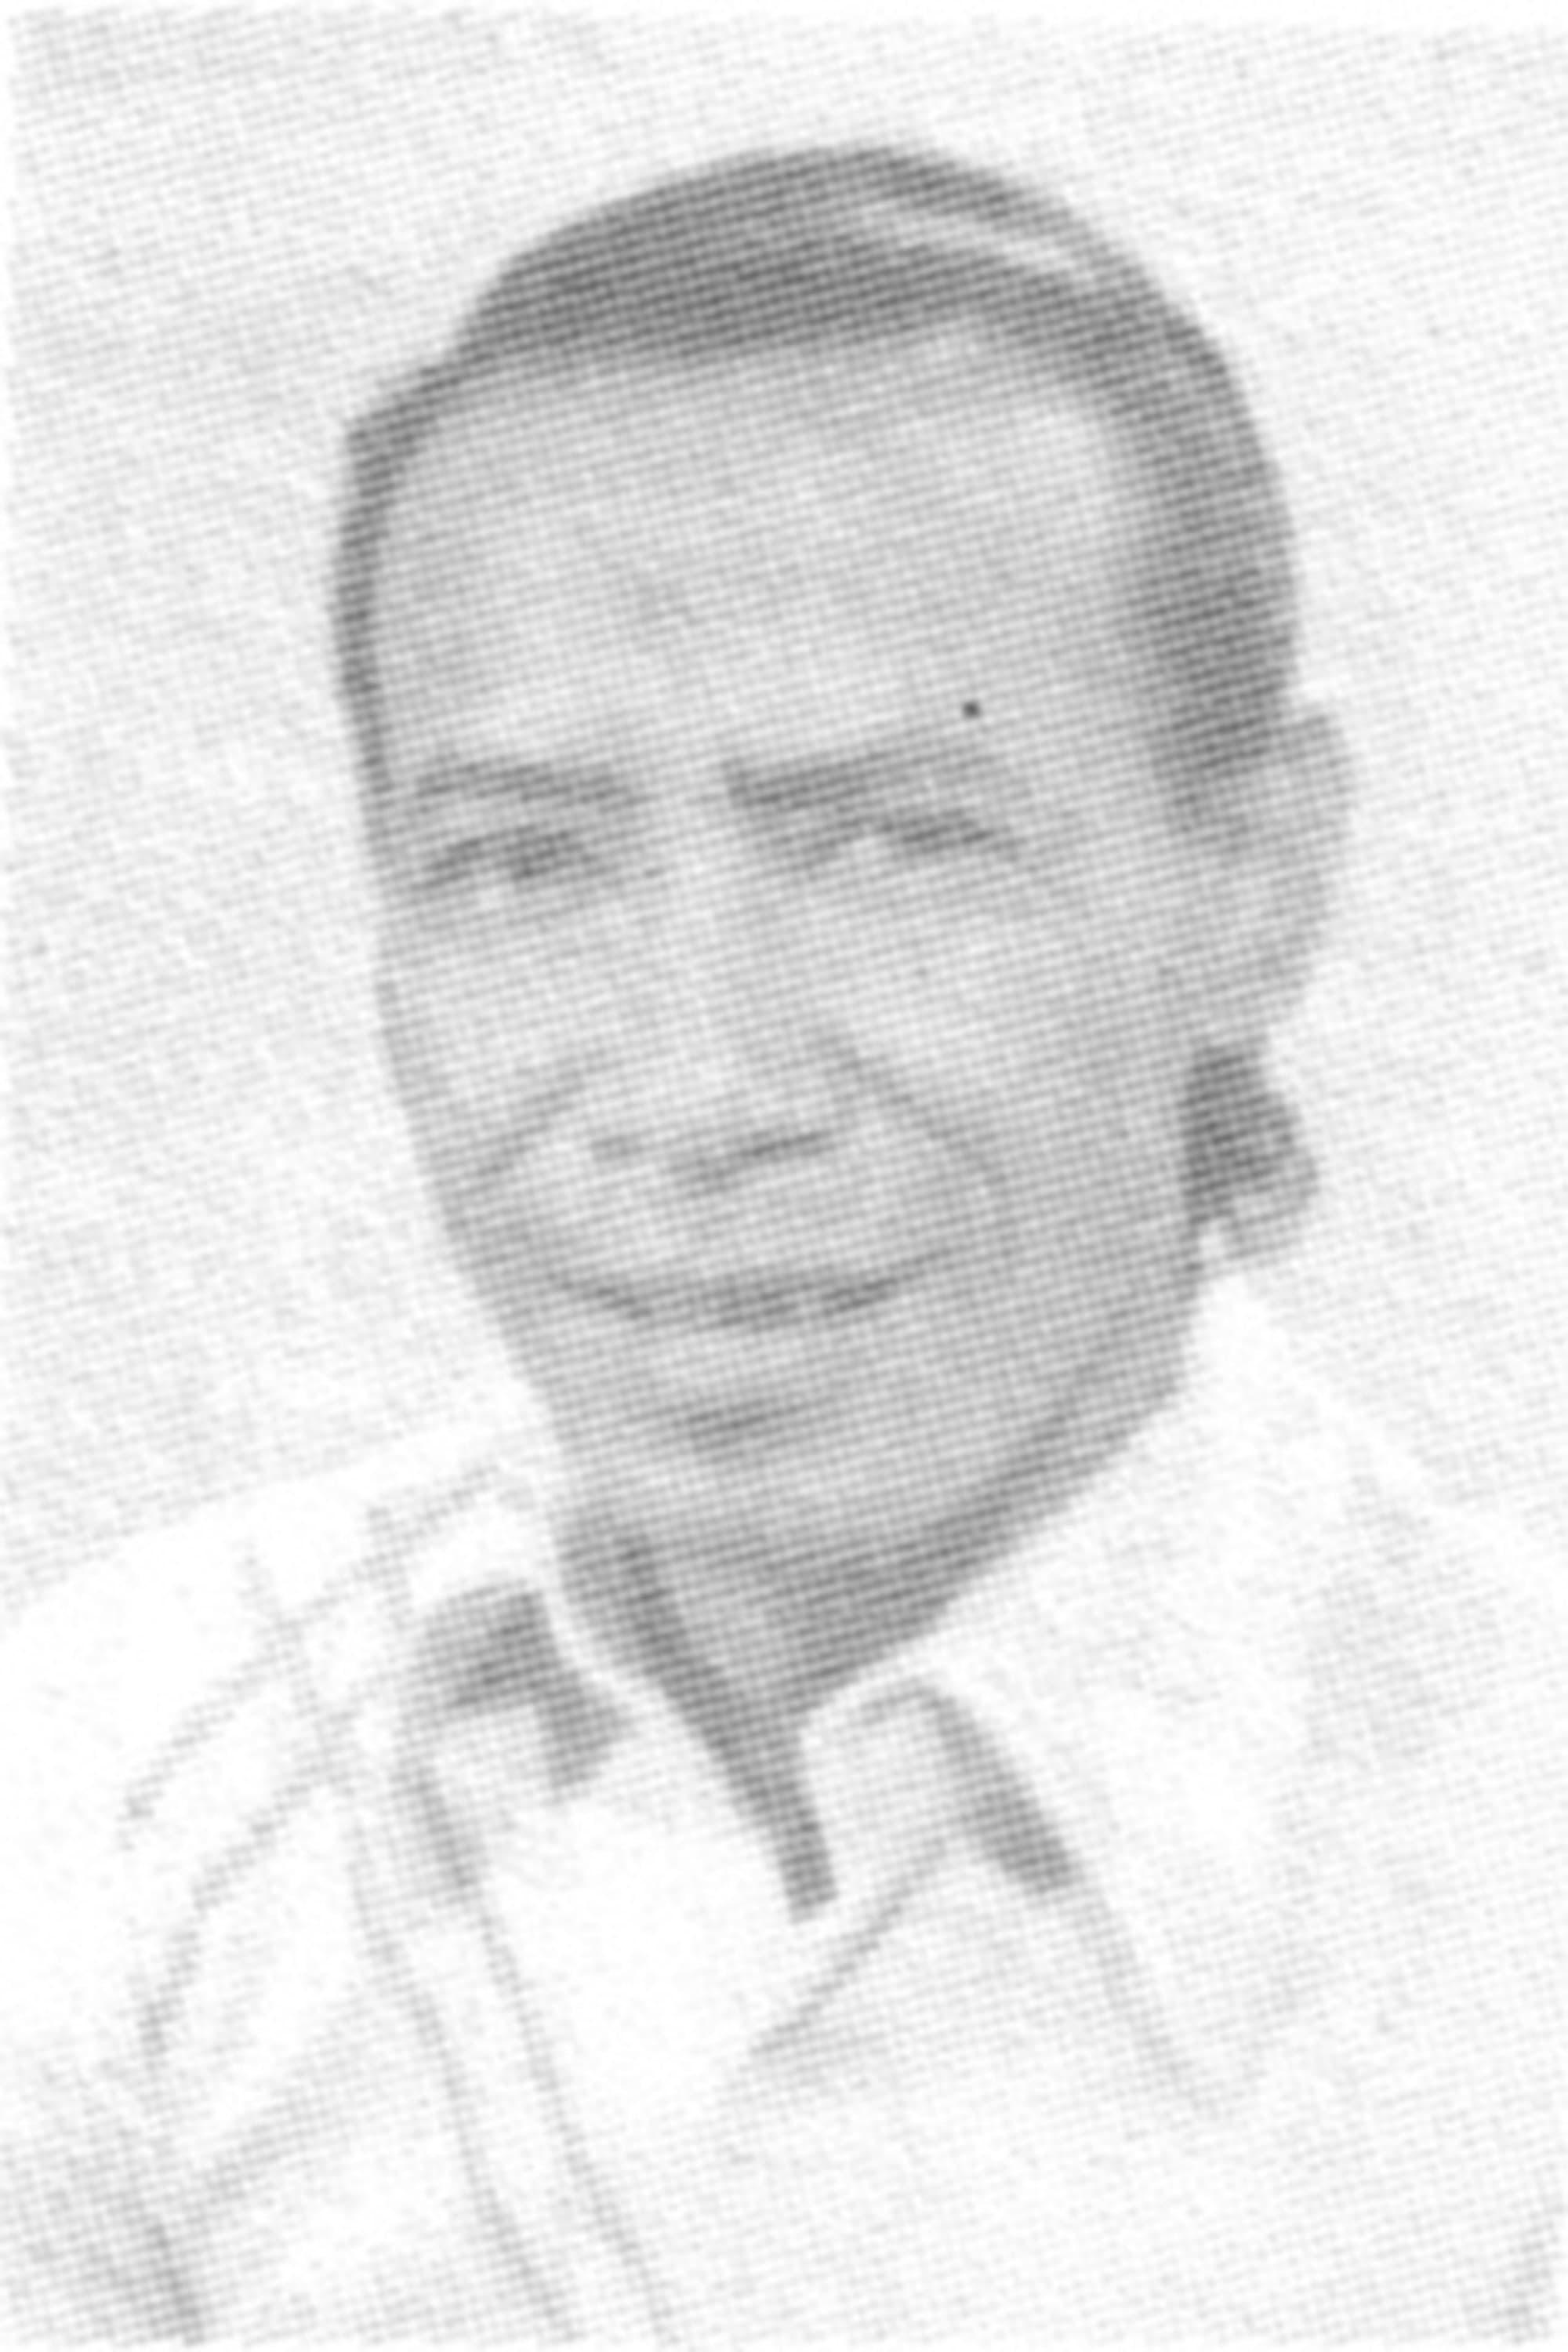 Sisworo Gautama Putra | Director